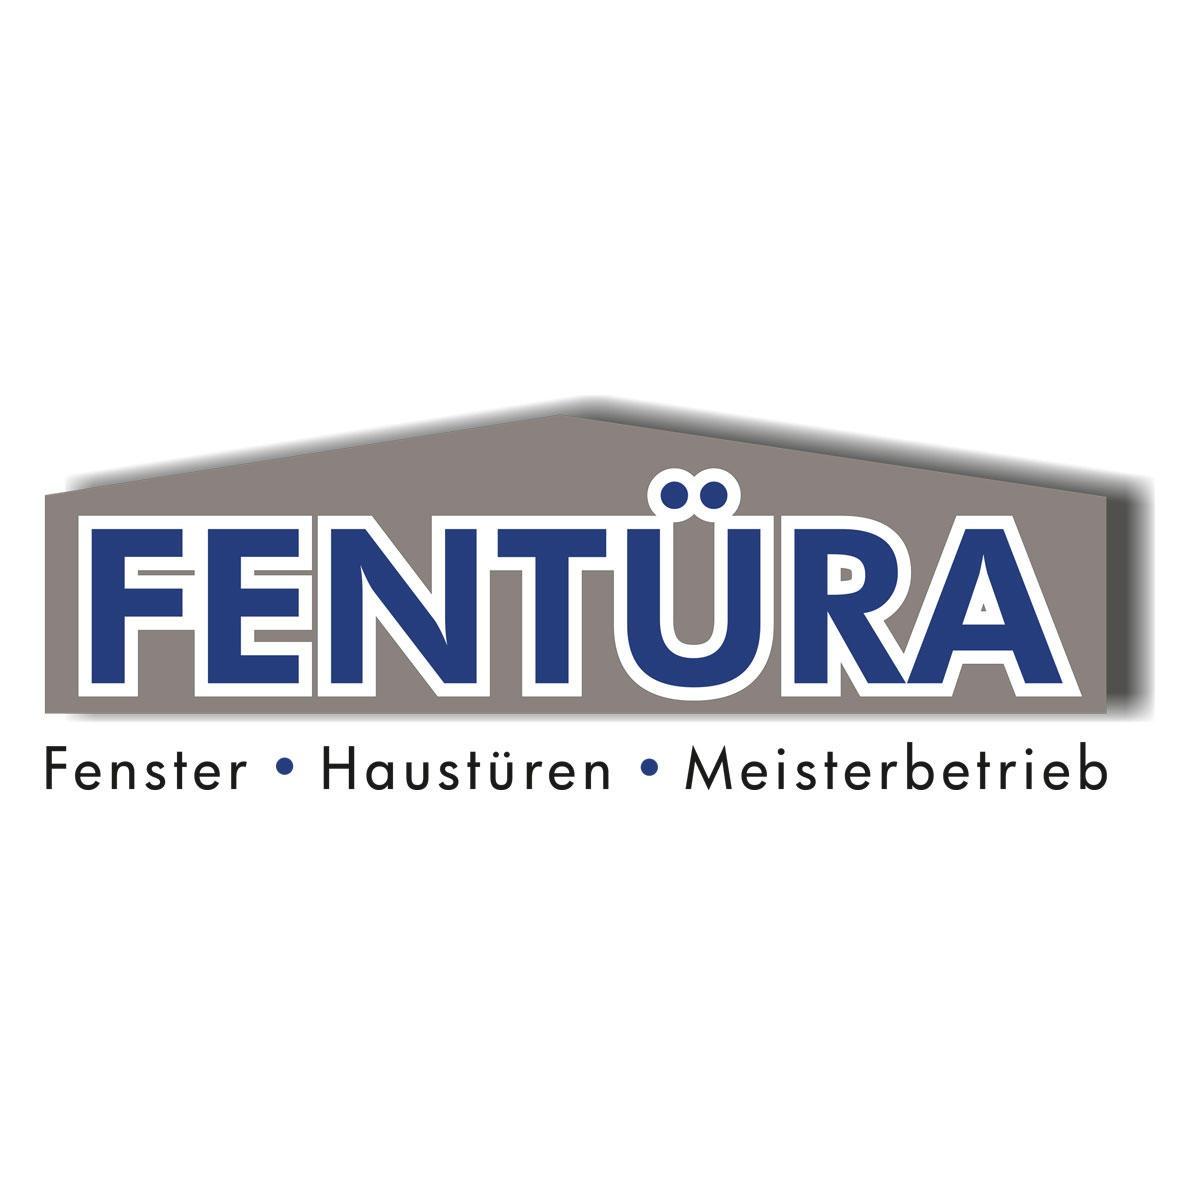 Fentüra GmbH & Co. KG in Schwerte - Logo